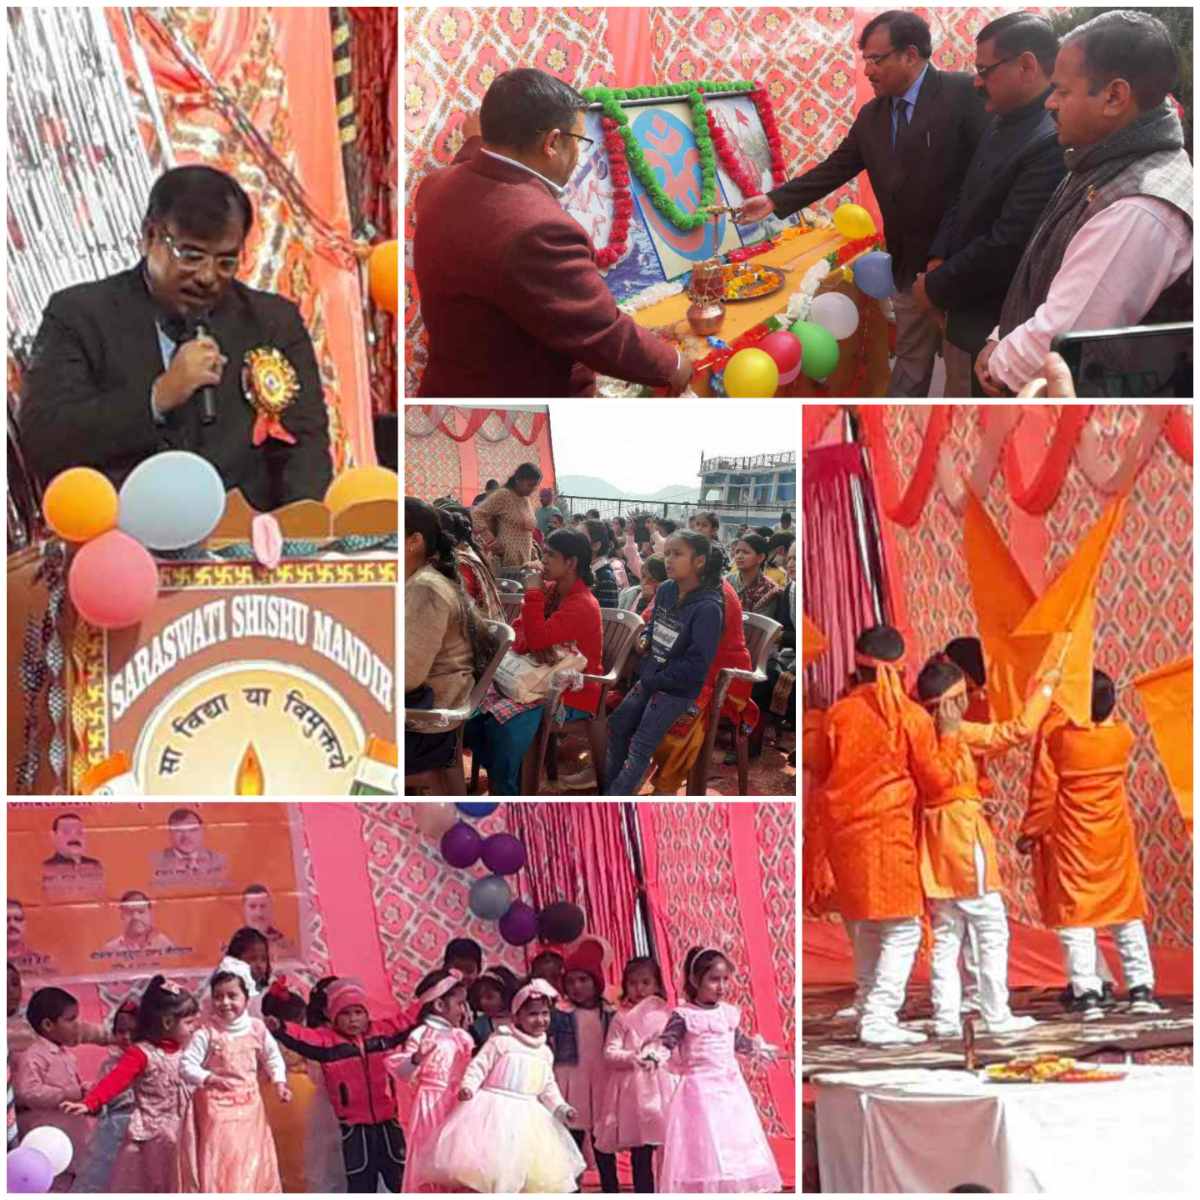 सरस्वती शिशु मंदिर सी ब्लॉक नई टिहरी का वार्षिकोत्सव समारोह धूमधाम से संपन्न हुआ